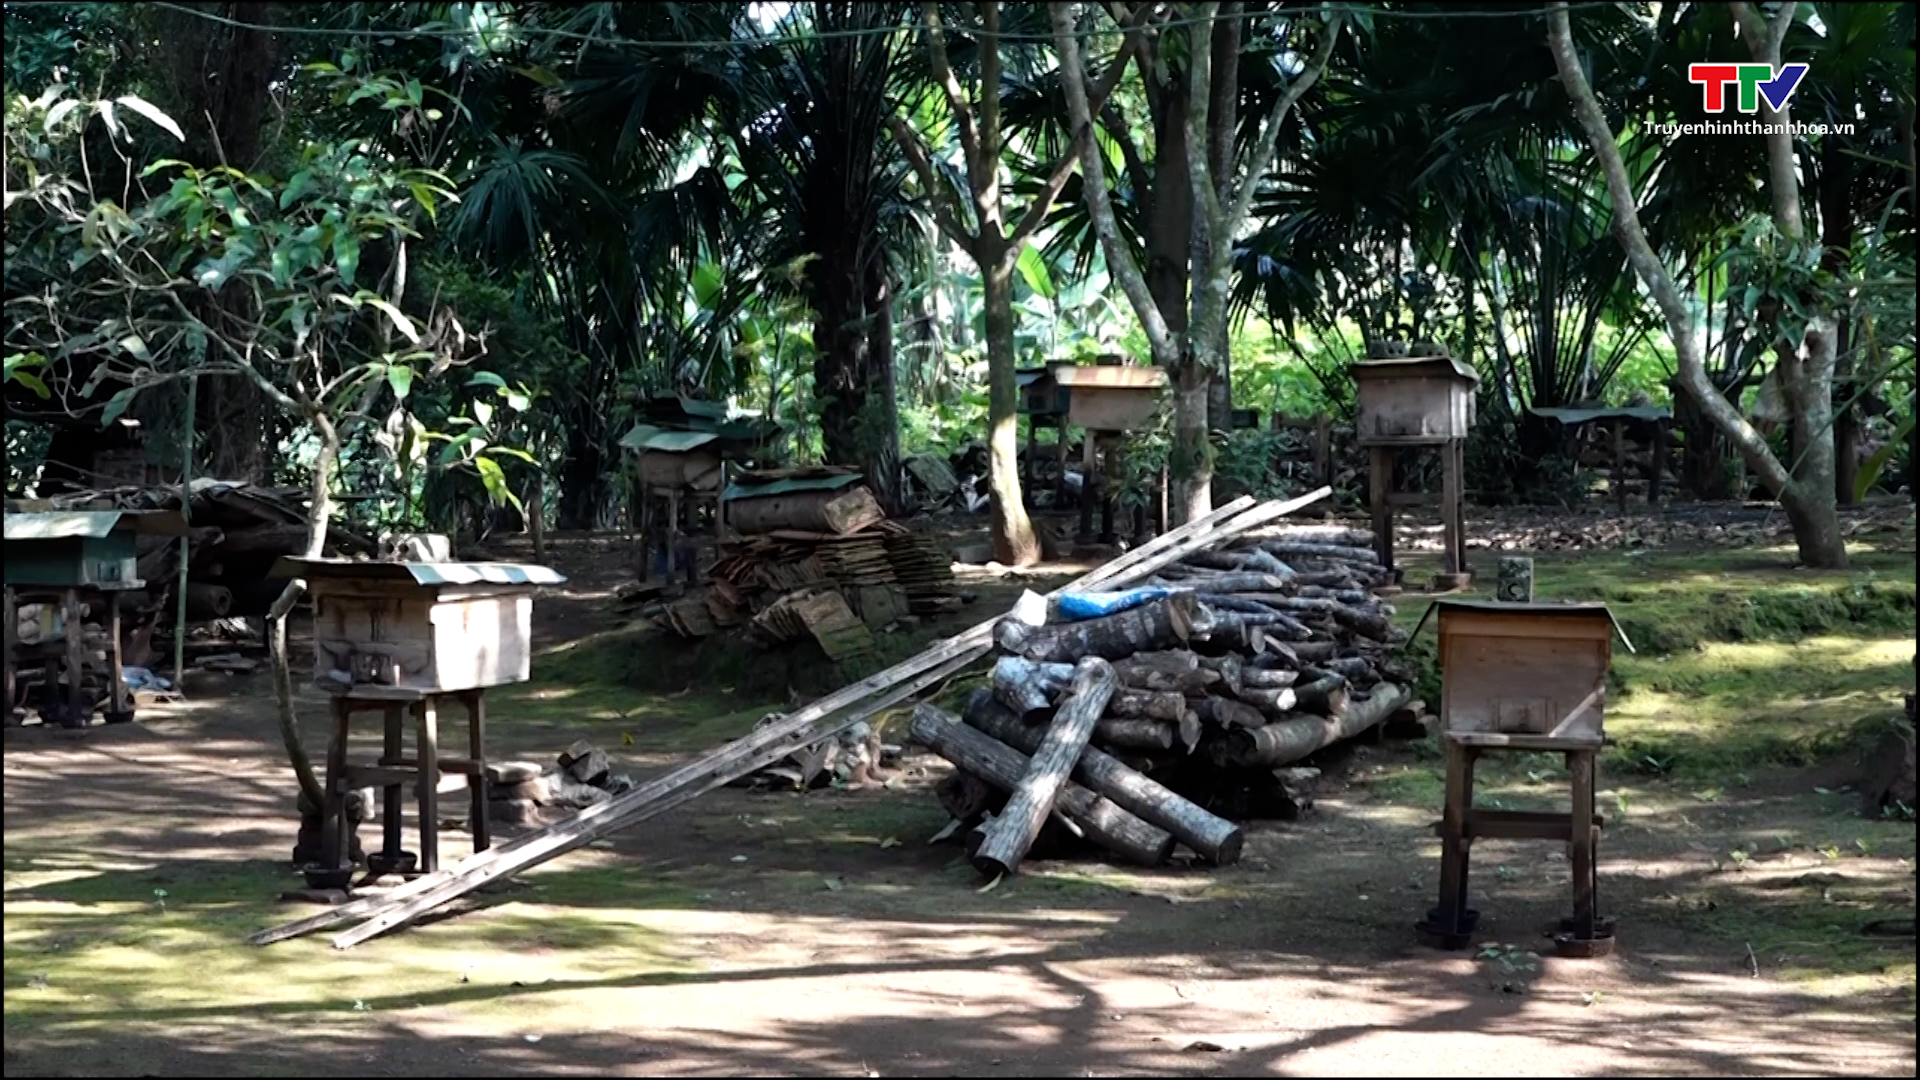 Hiệu quả kinh tế từ nghề nuôi ong lấy mật tại xã Xuân Bình - Ảnh 4.